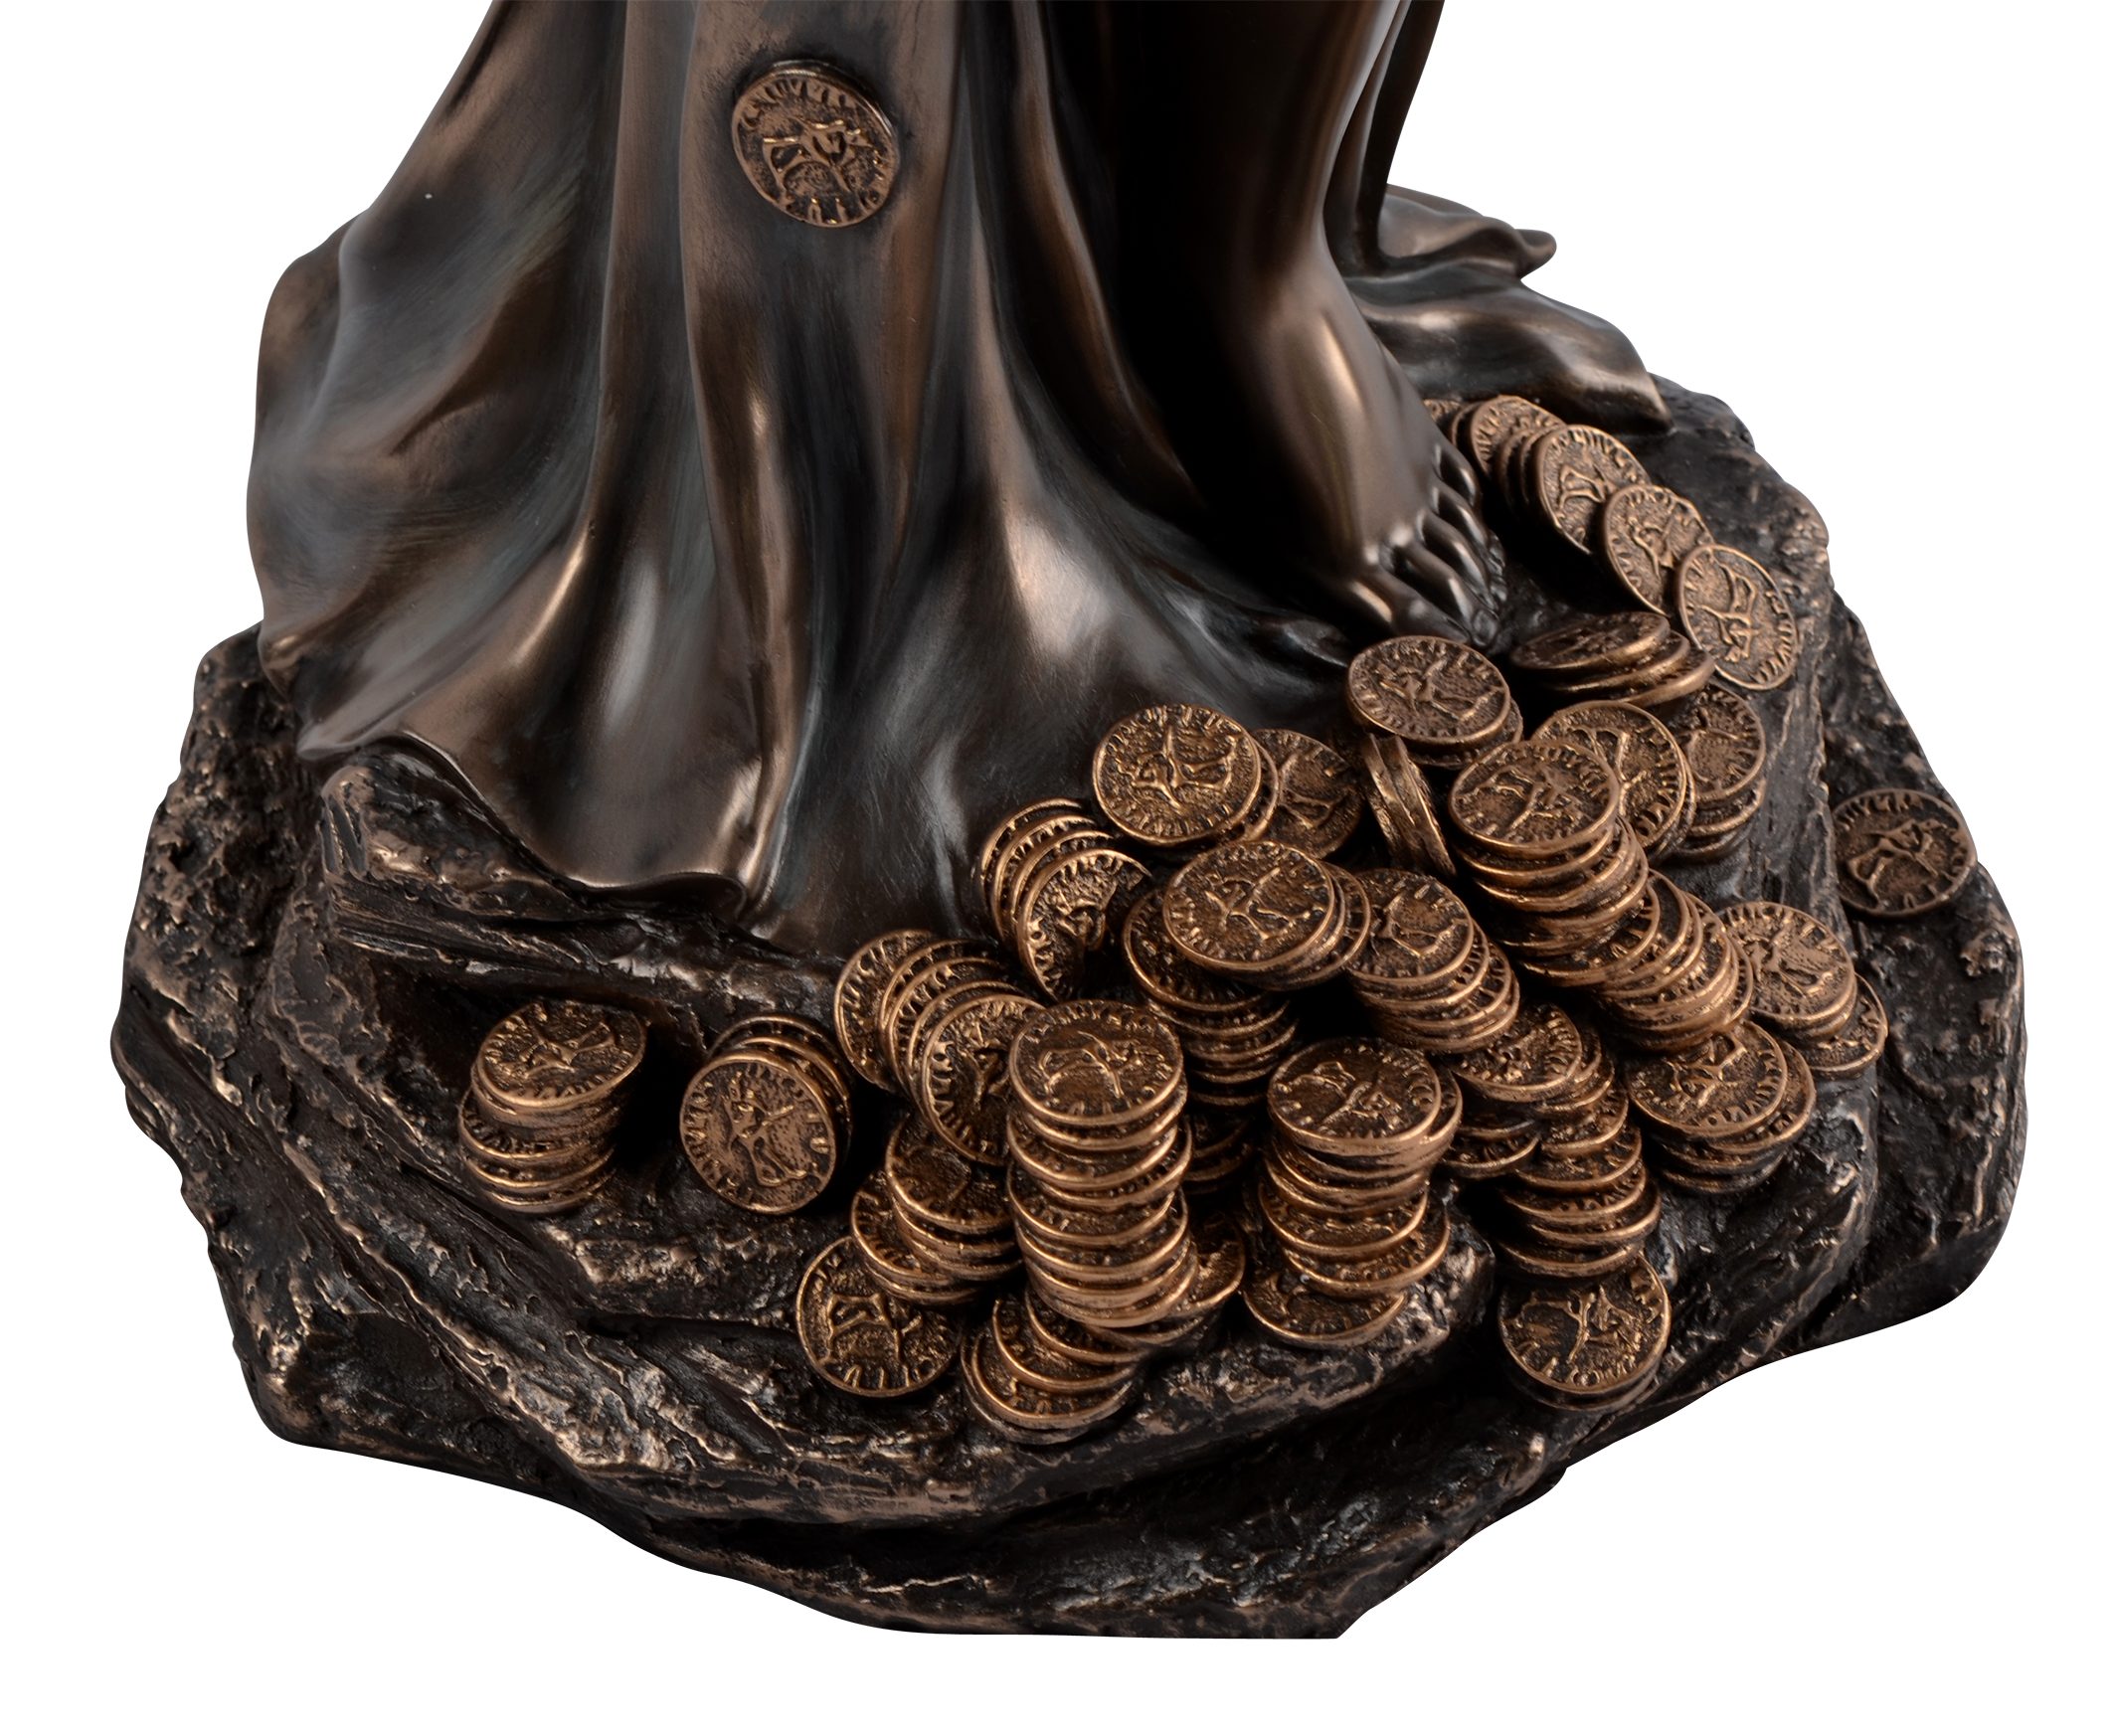 bronziert Gmbh Hand Dekofigur von Glücks mit direct Vogler by Göttin Fortuna Römische Füllhorn des Veronese,